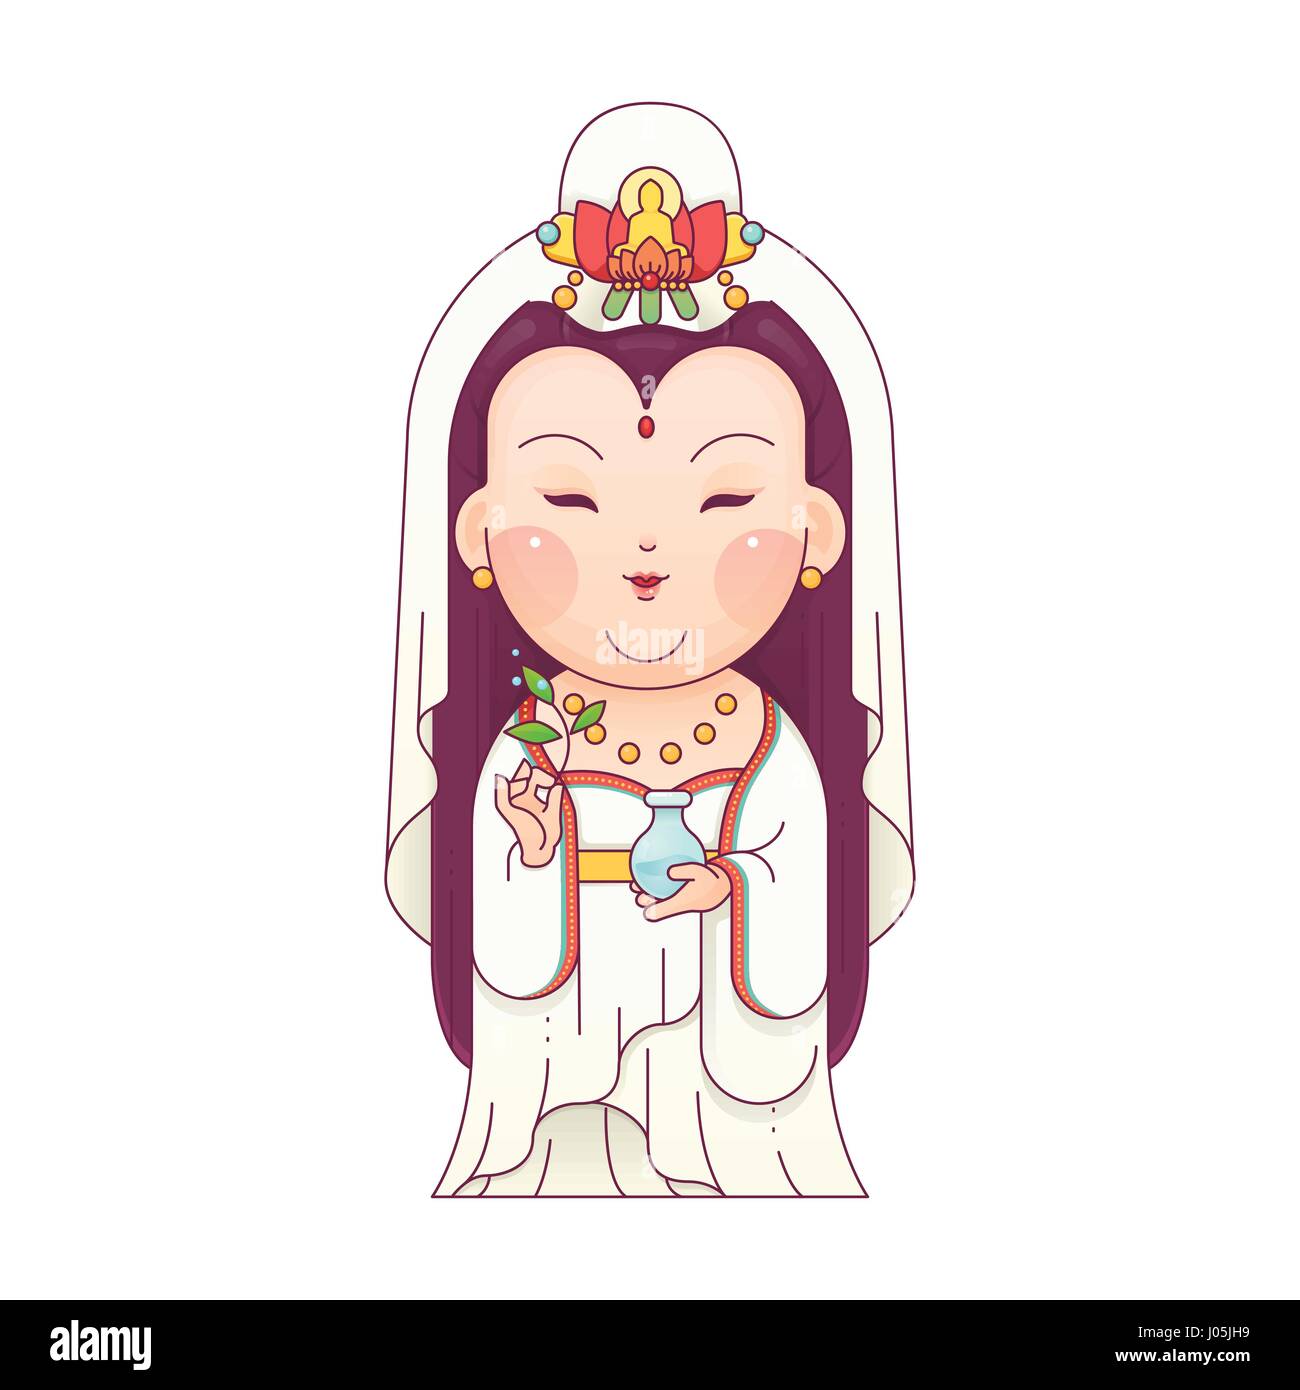 Illustrazione Vettoriale di Guanyin la Dea della Misericordia. Dea cinese. Personaggio dei fumetti. Illustrazione Vettoriale